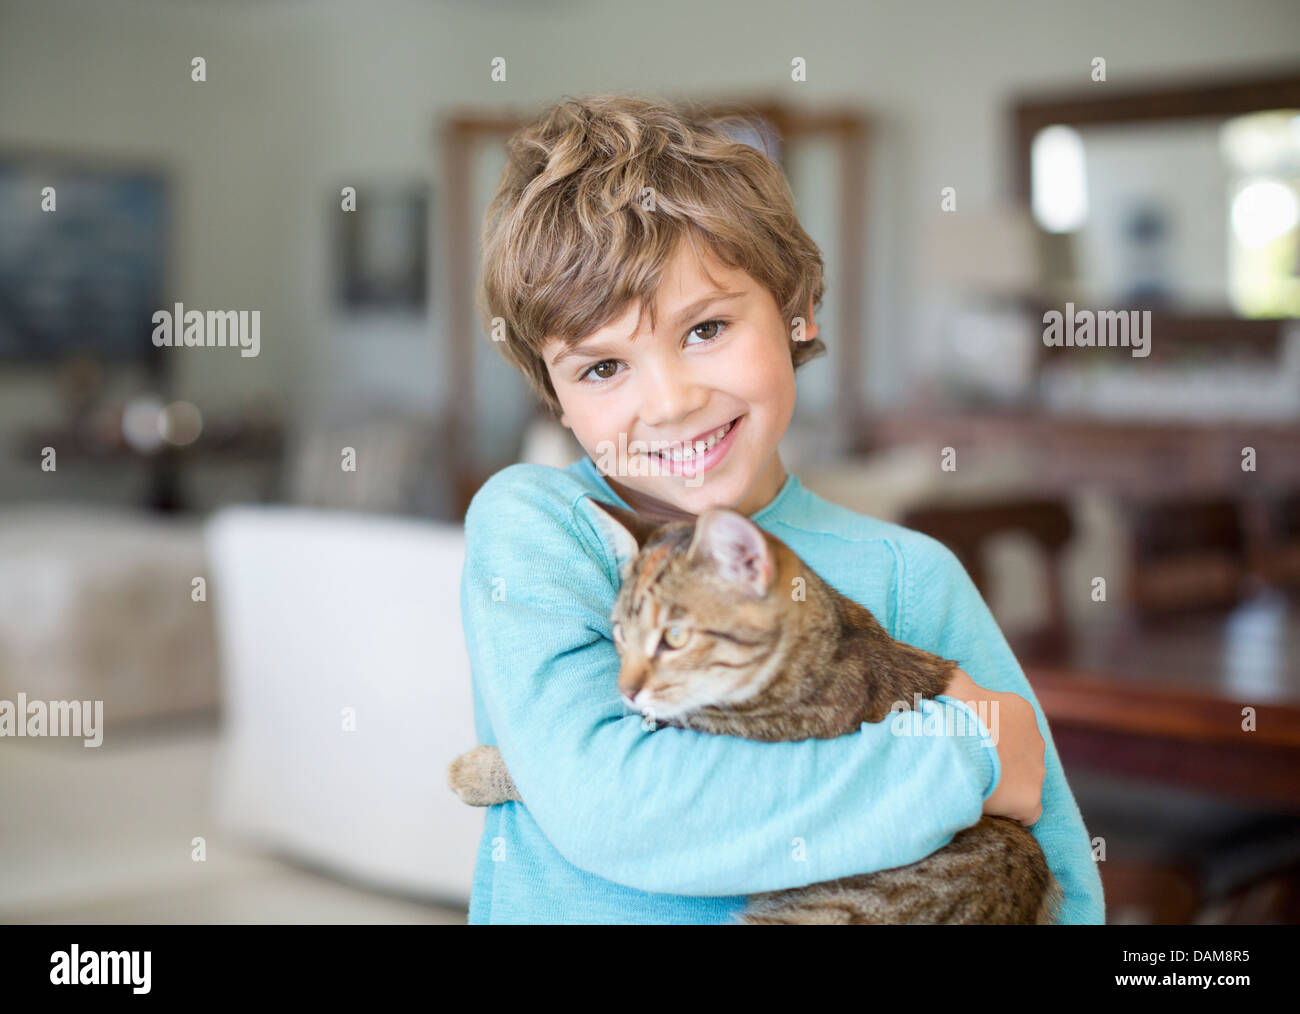 Boy hugging cat in living room Banque D'Images